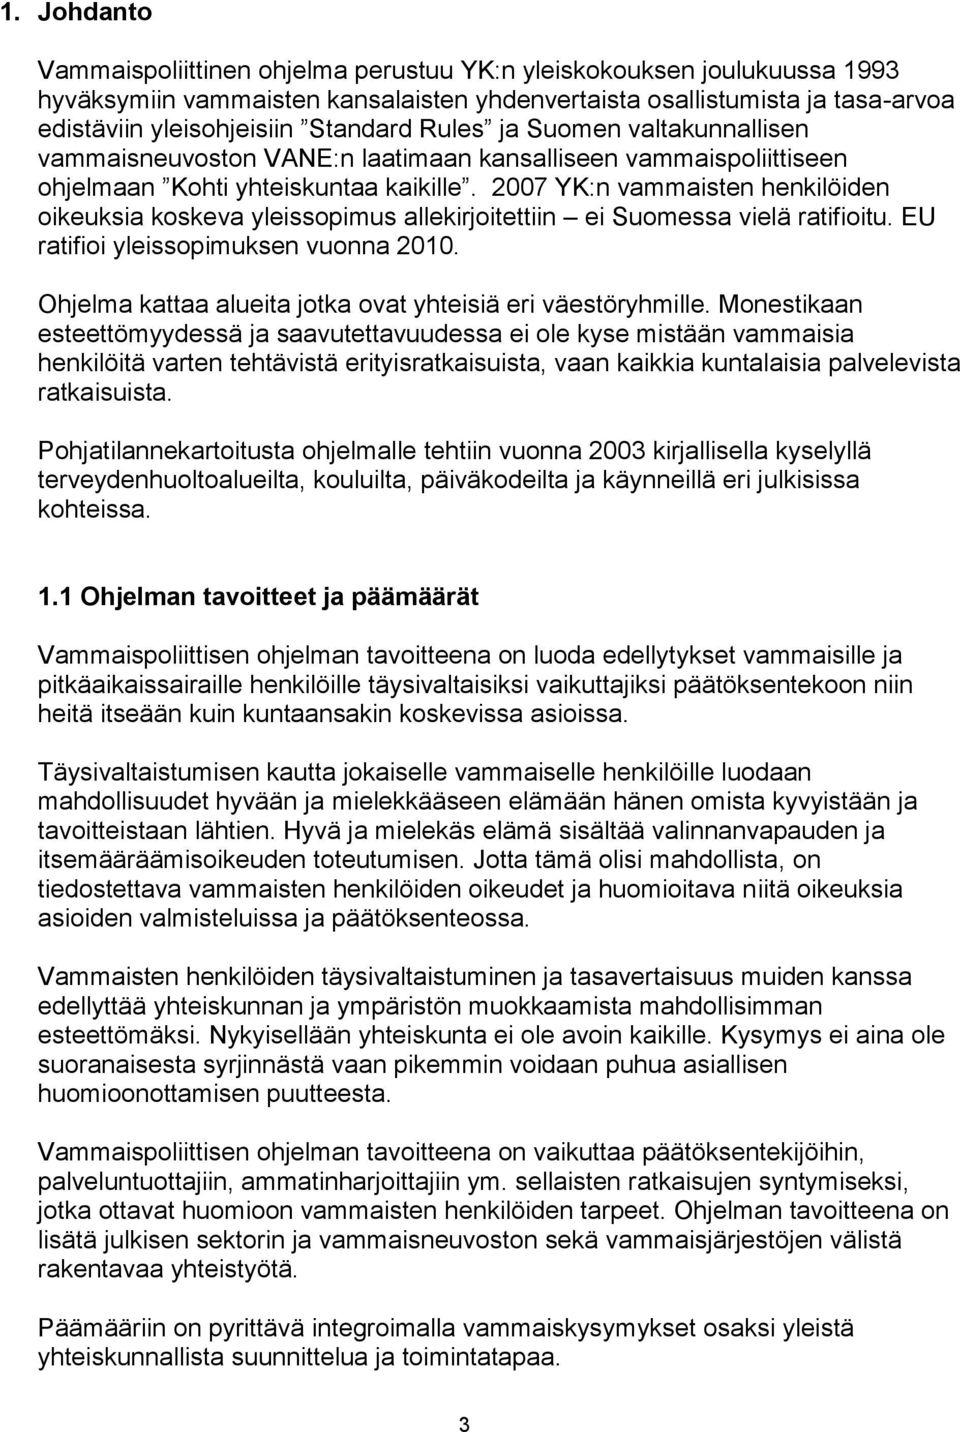 2007 YK:n vammaisten henkilöiden oikeuksia koskeva yleissopimus allekirjoitettiin ei Suomessa vielä ratifioitu. EU ratifioi yleissopimuksen vuonna 2010.